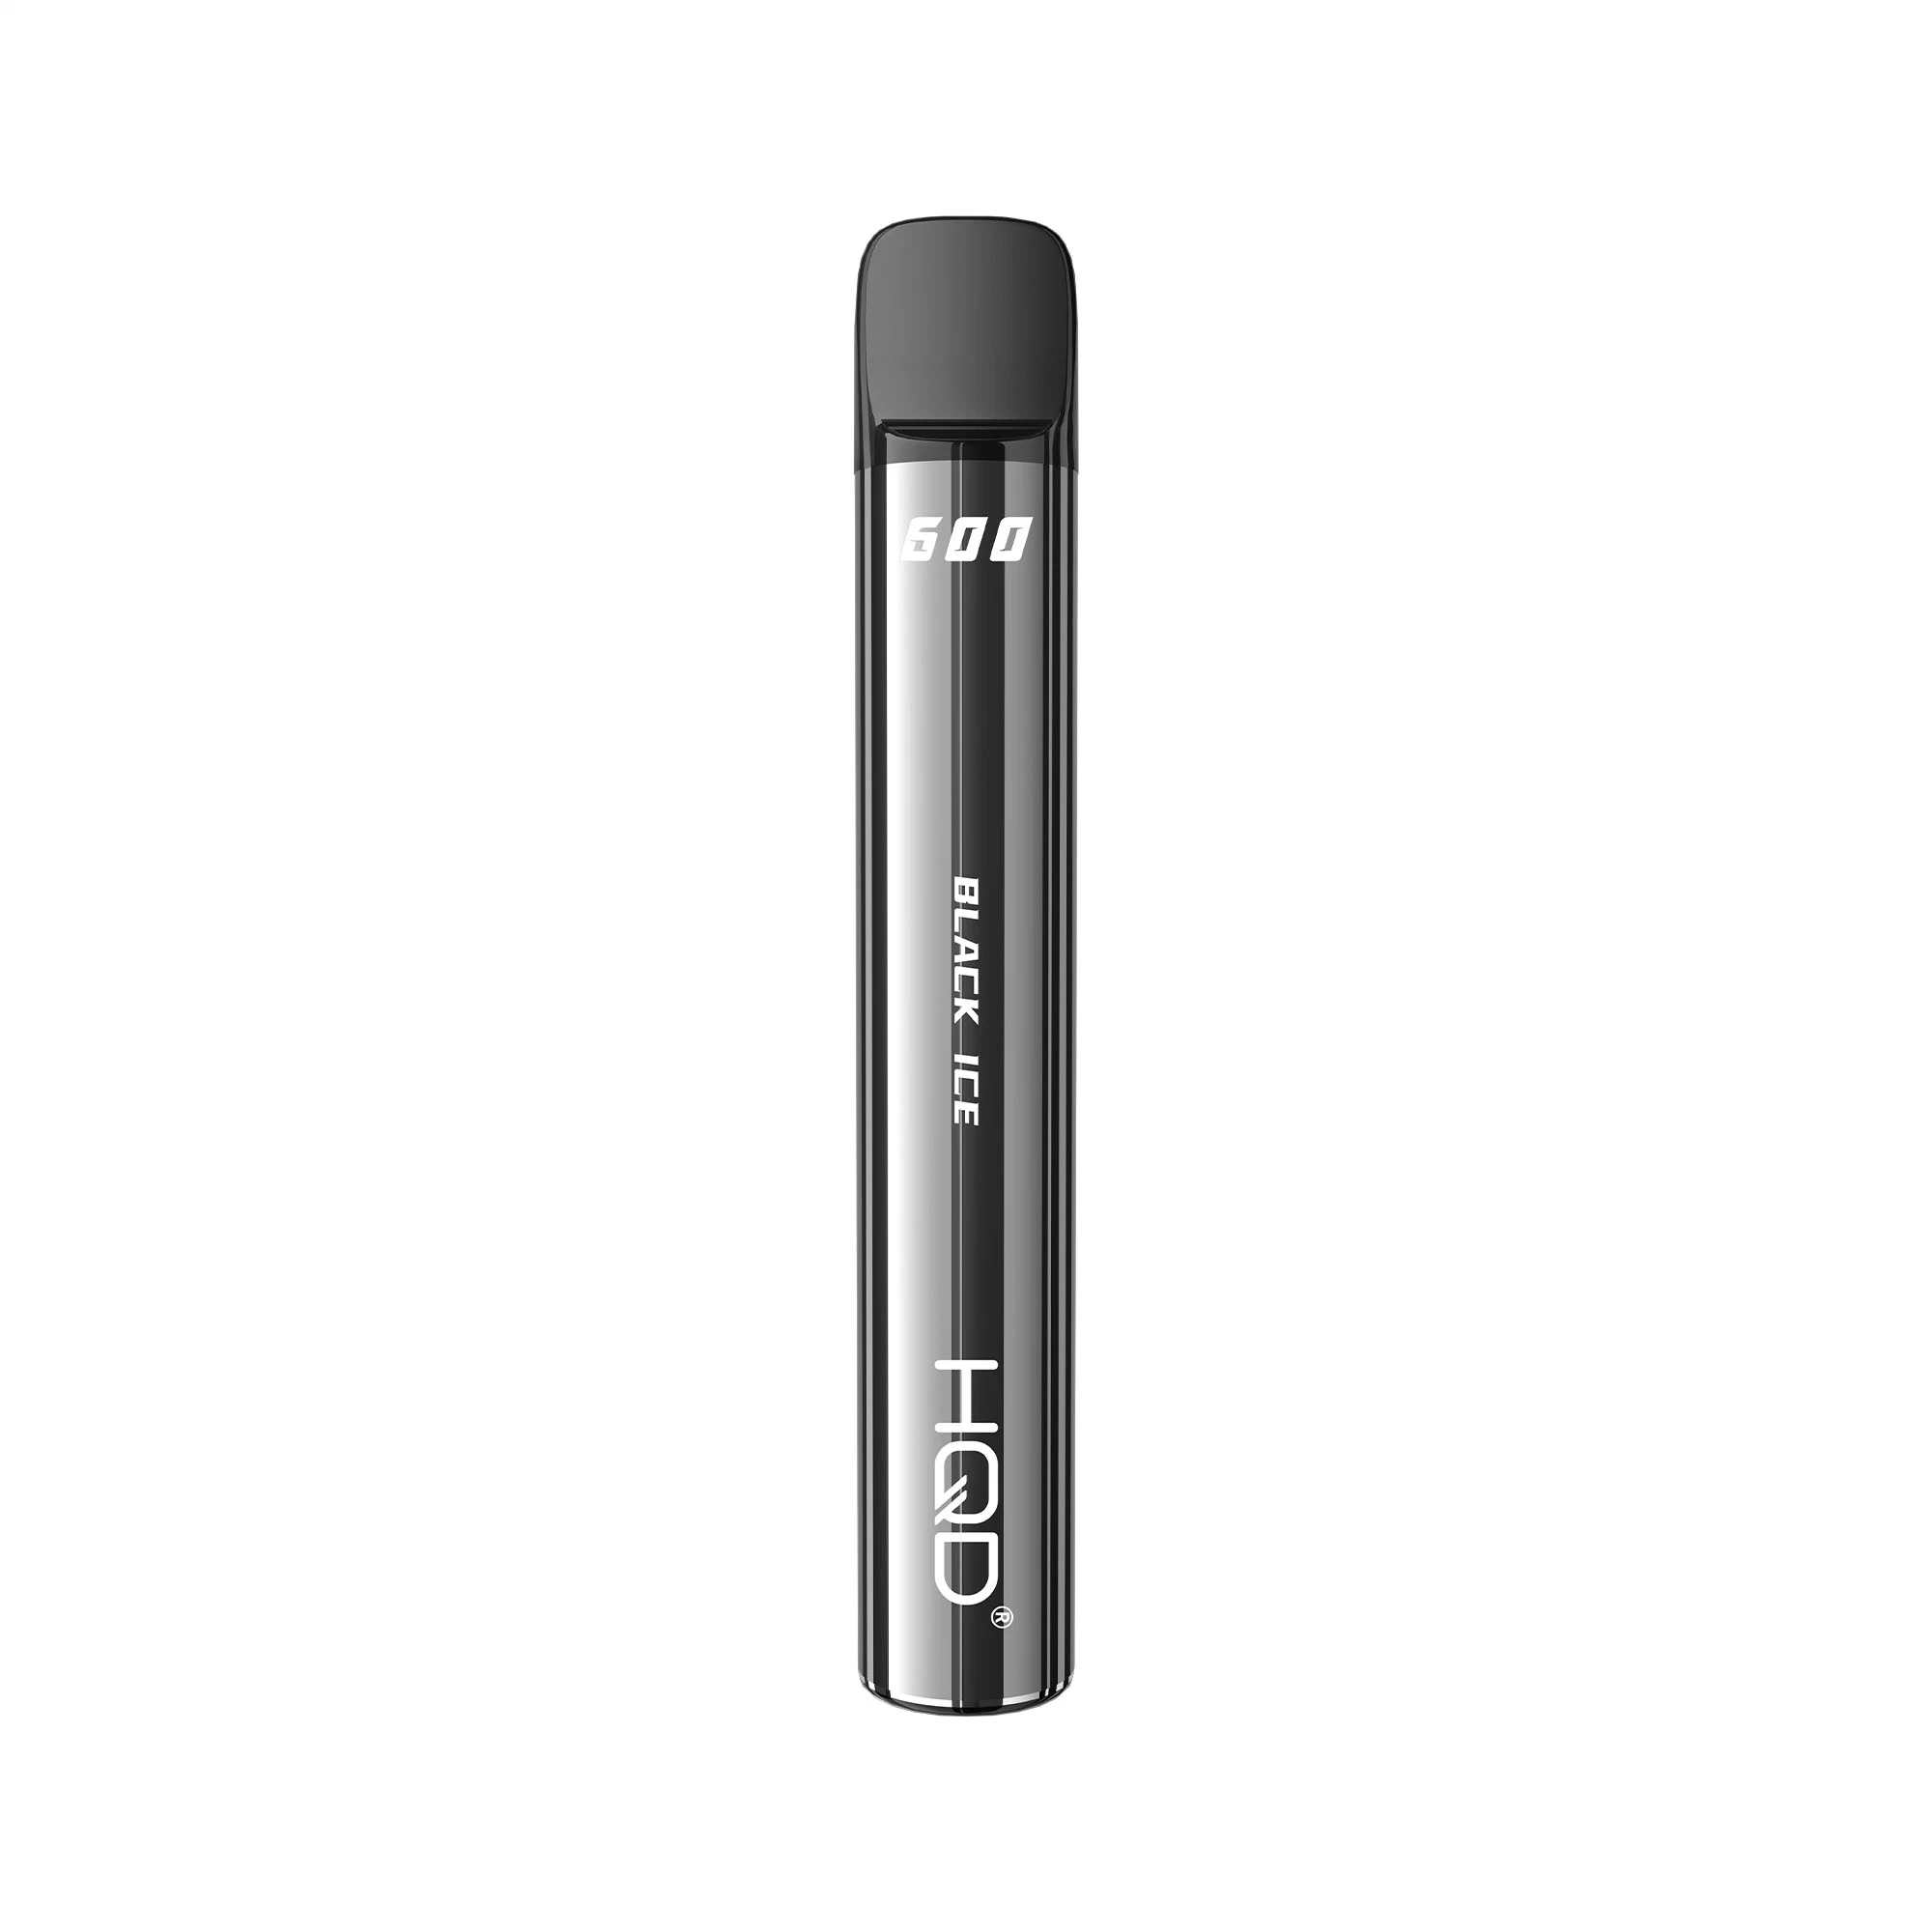 Hqd Super Bar 600 Puffs 500 mAh Best Quality E-Cigarette Disposable Vape Pen